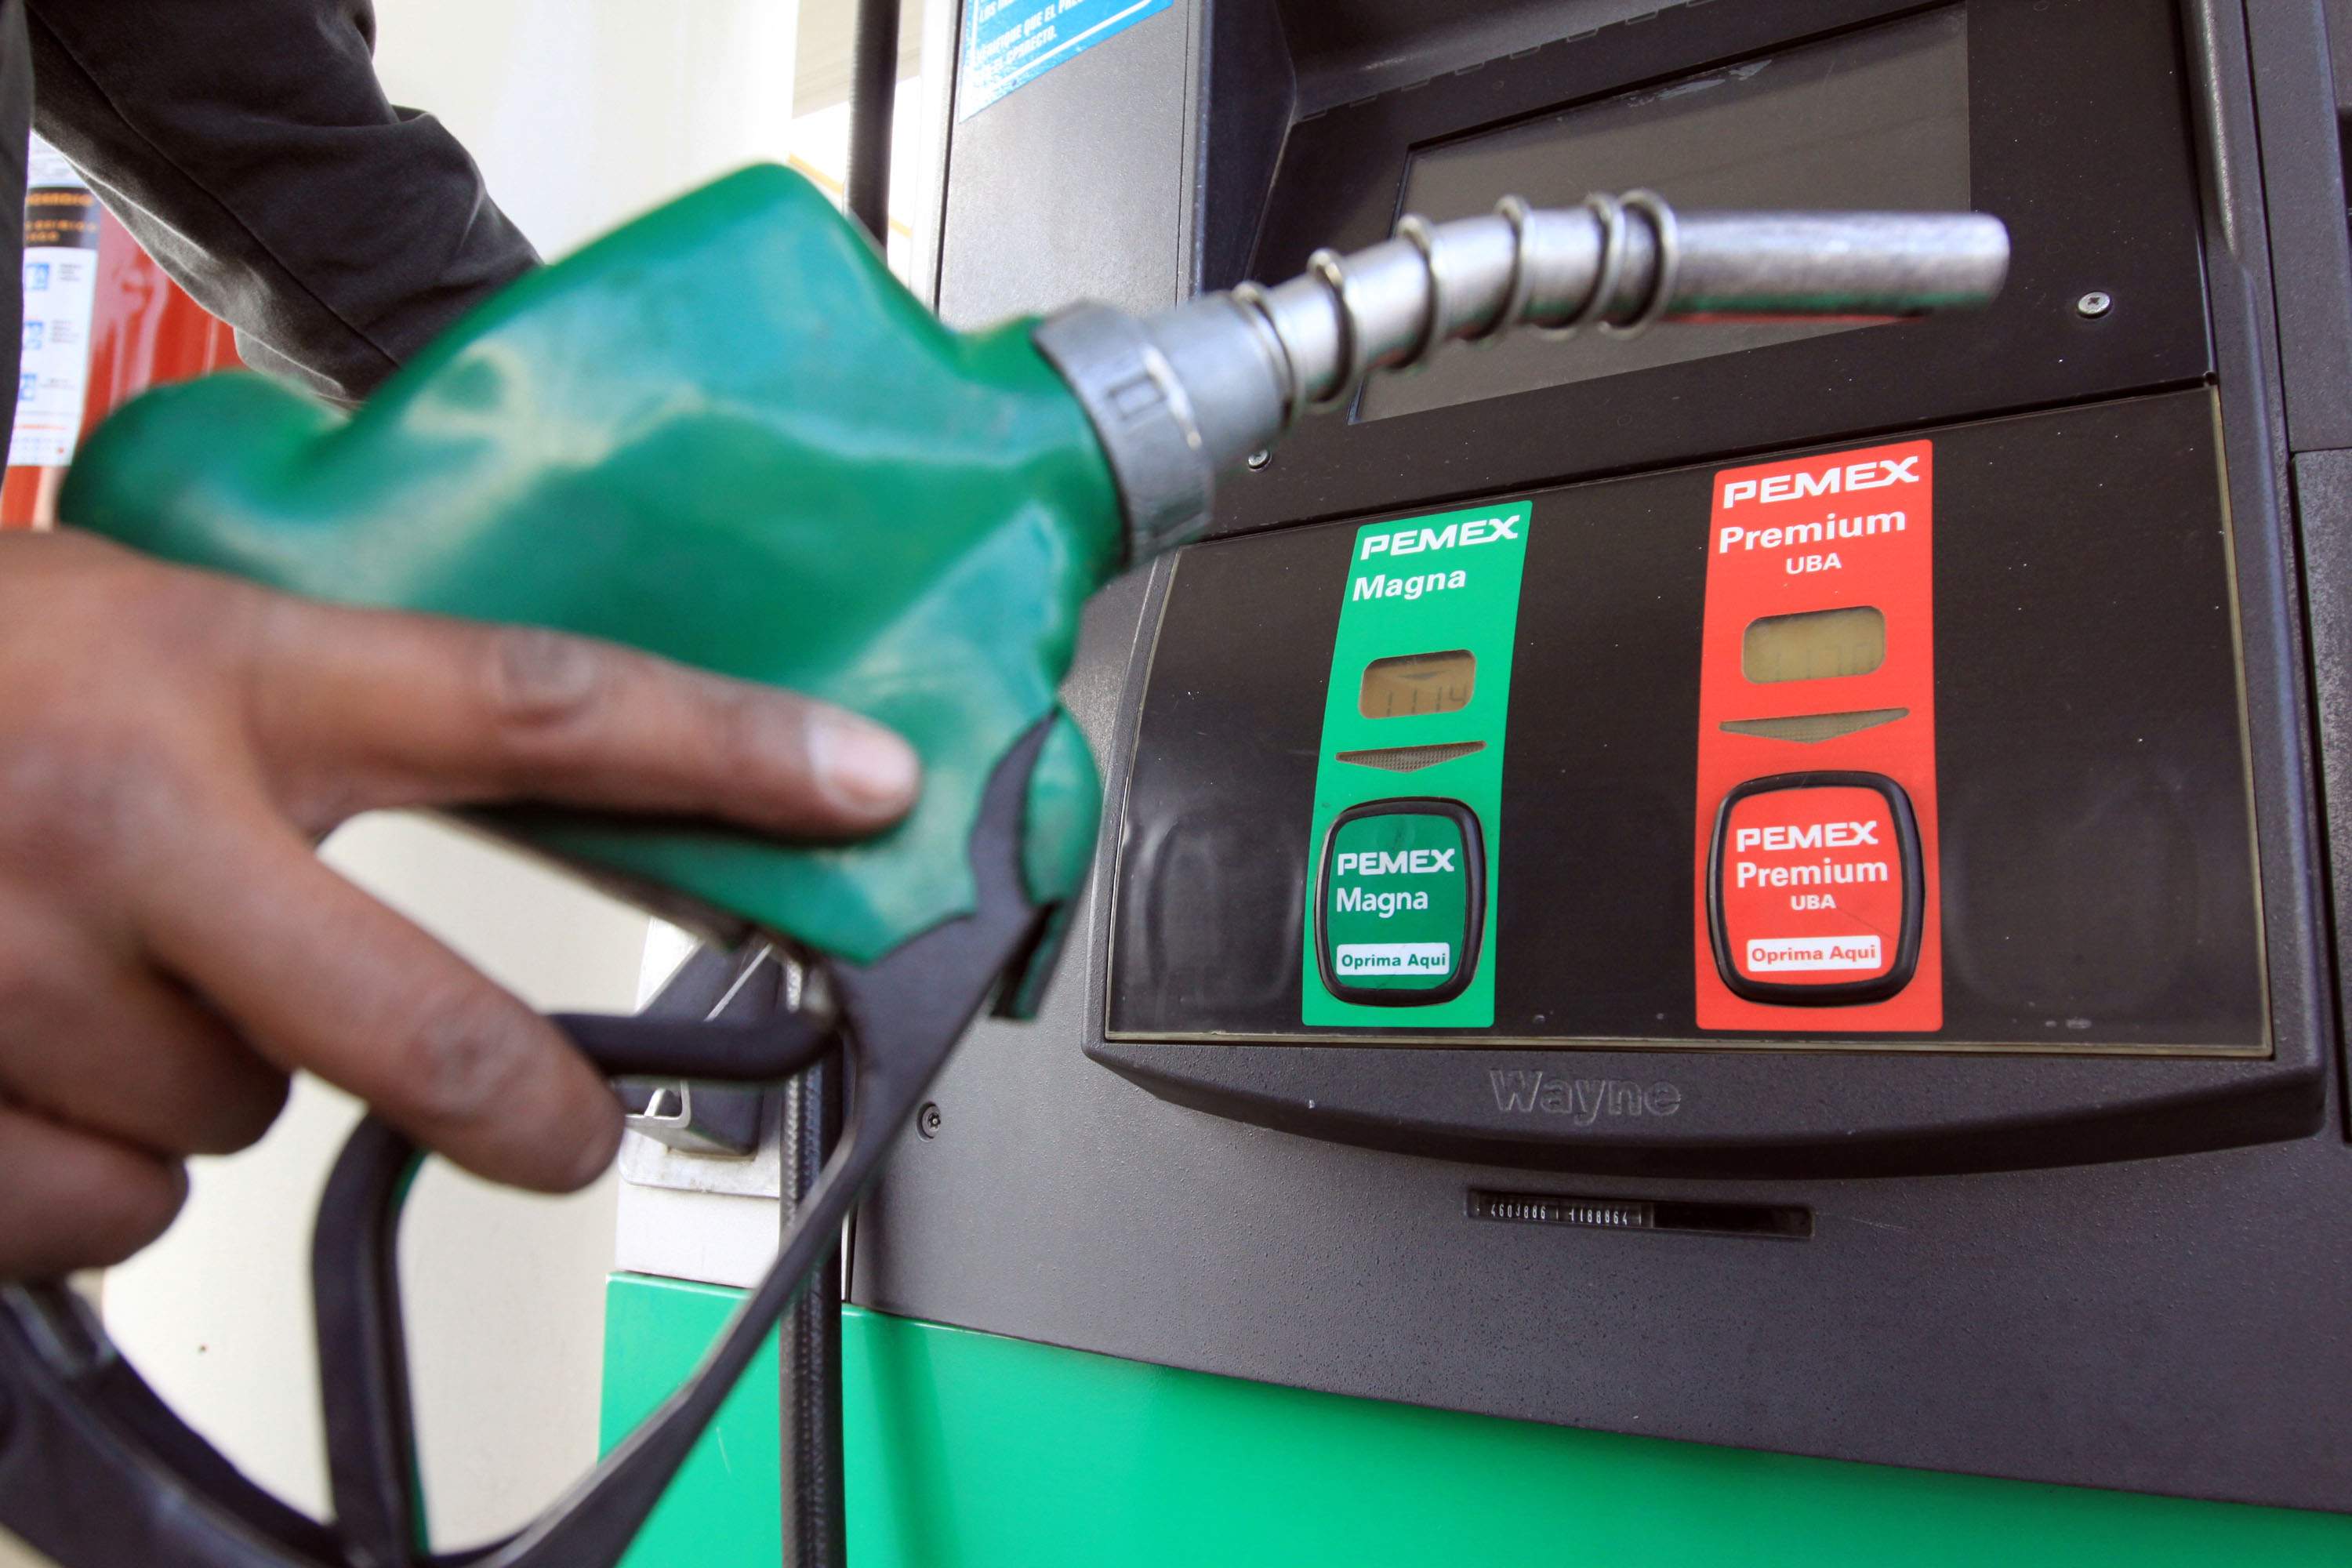 Posto do ES eleva preço da gasolina em R$ 4,99 enquanto motoristas abasteciam e polícia é acionada